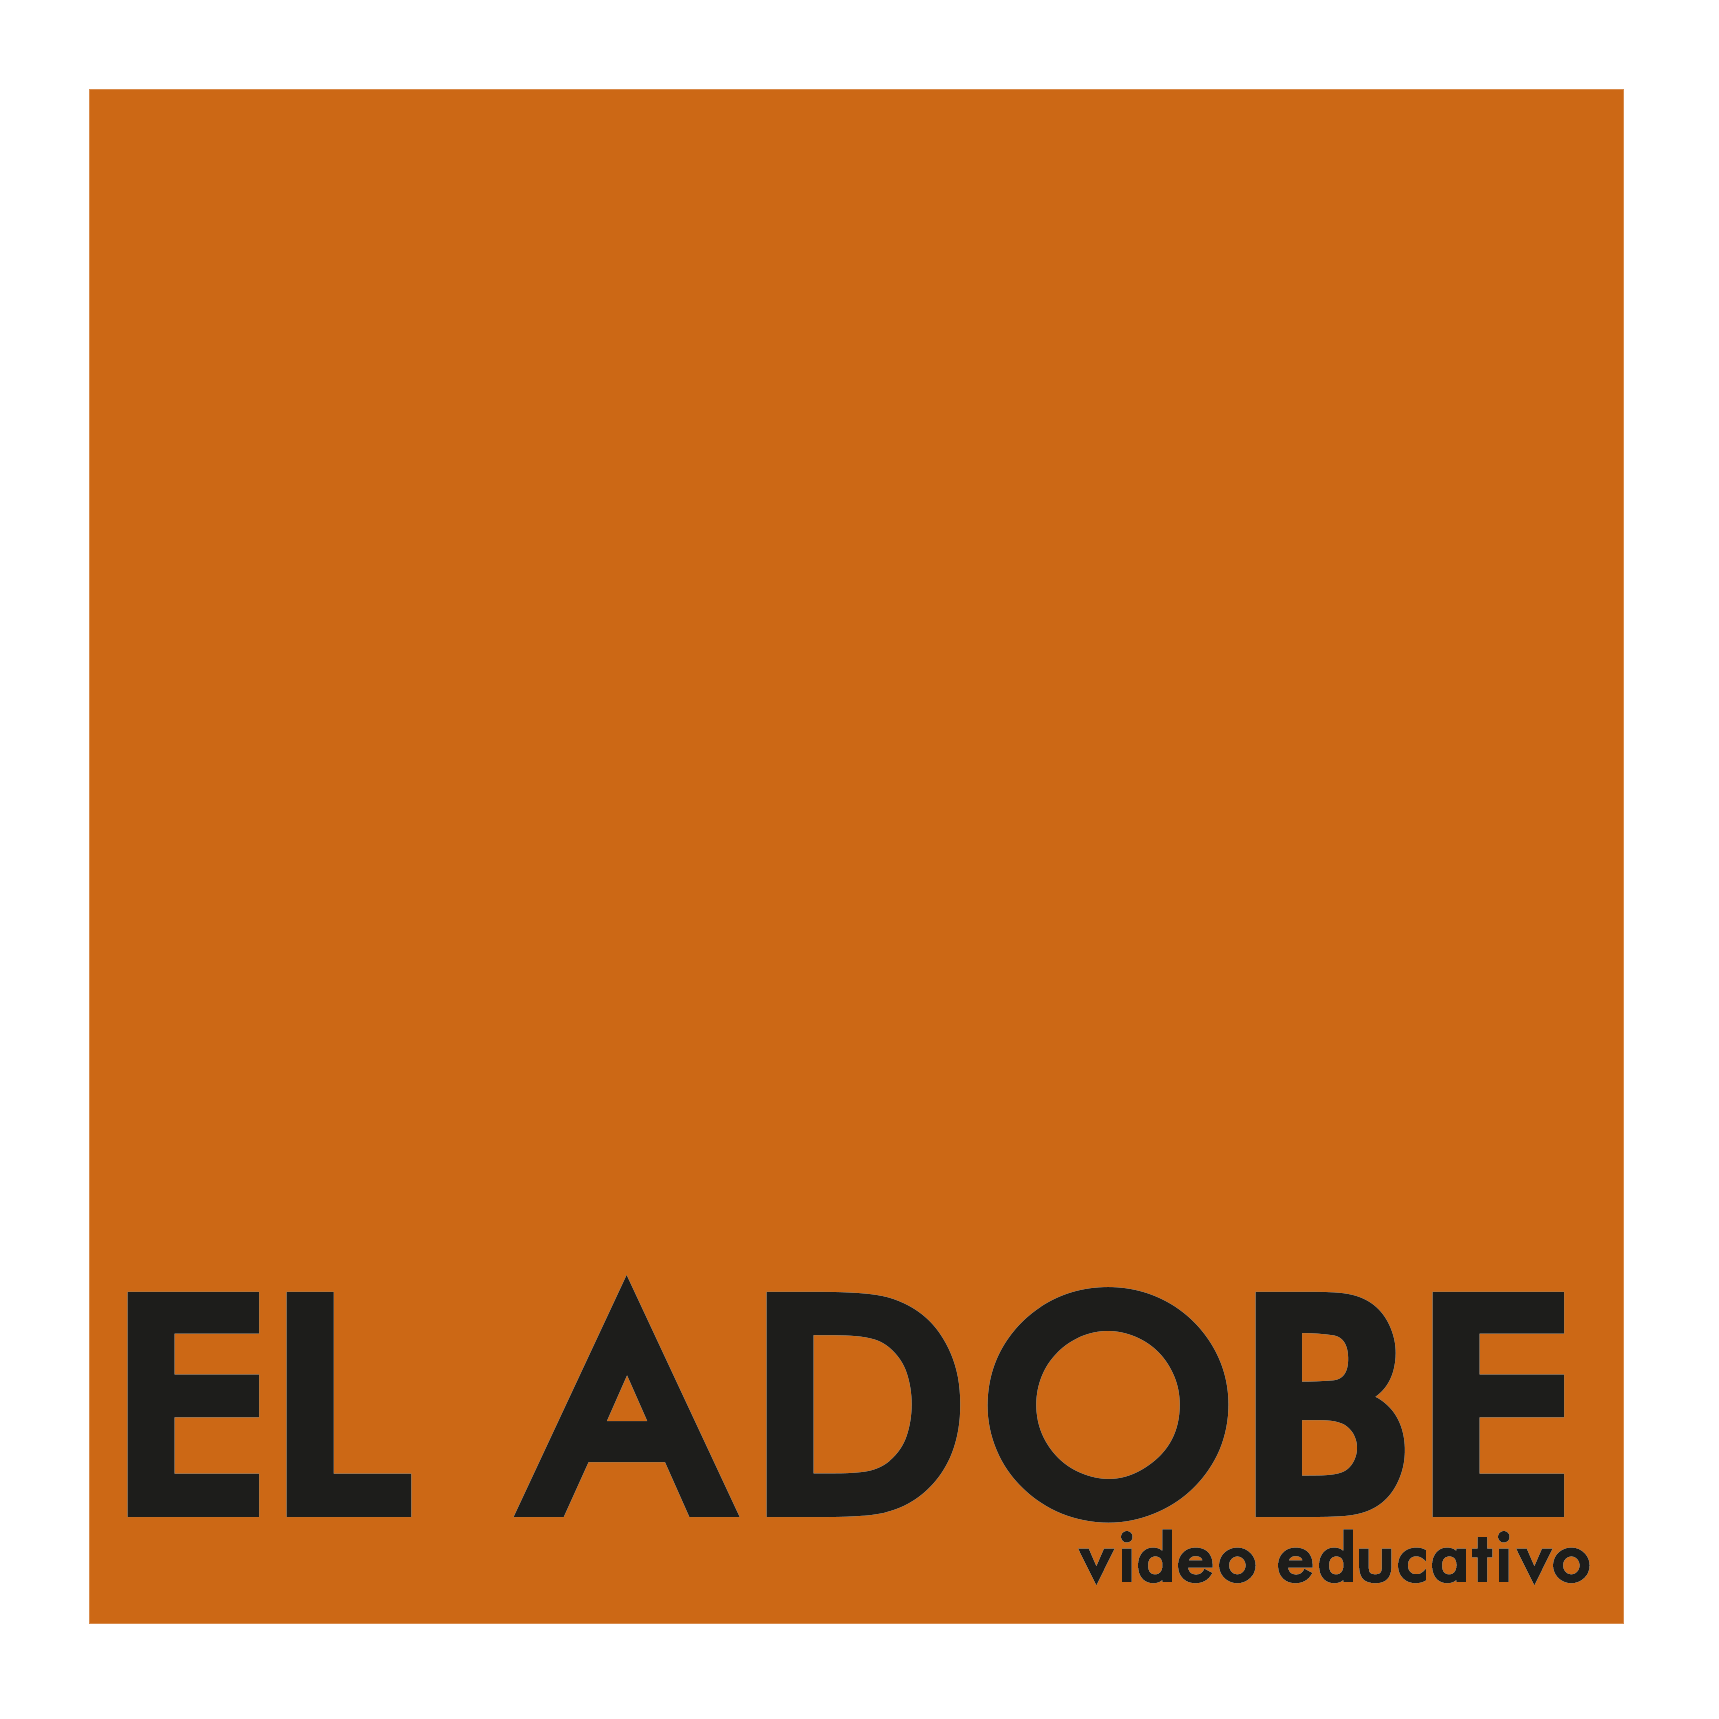 Video educativo EL ADOBE